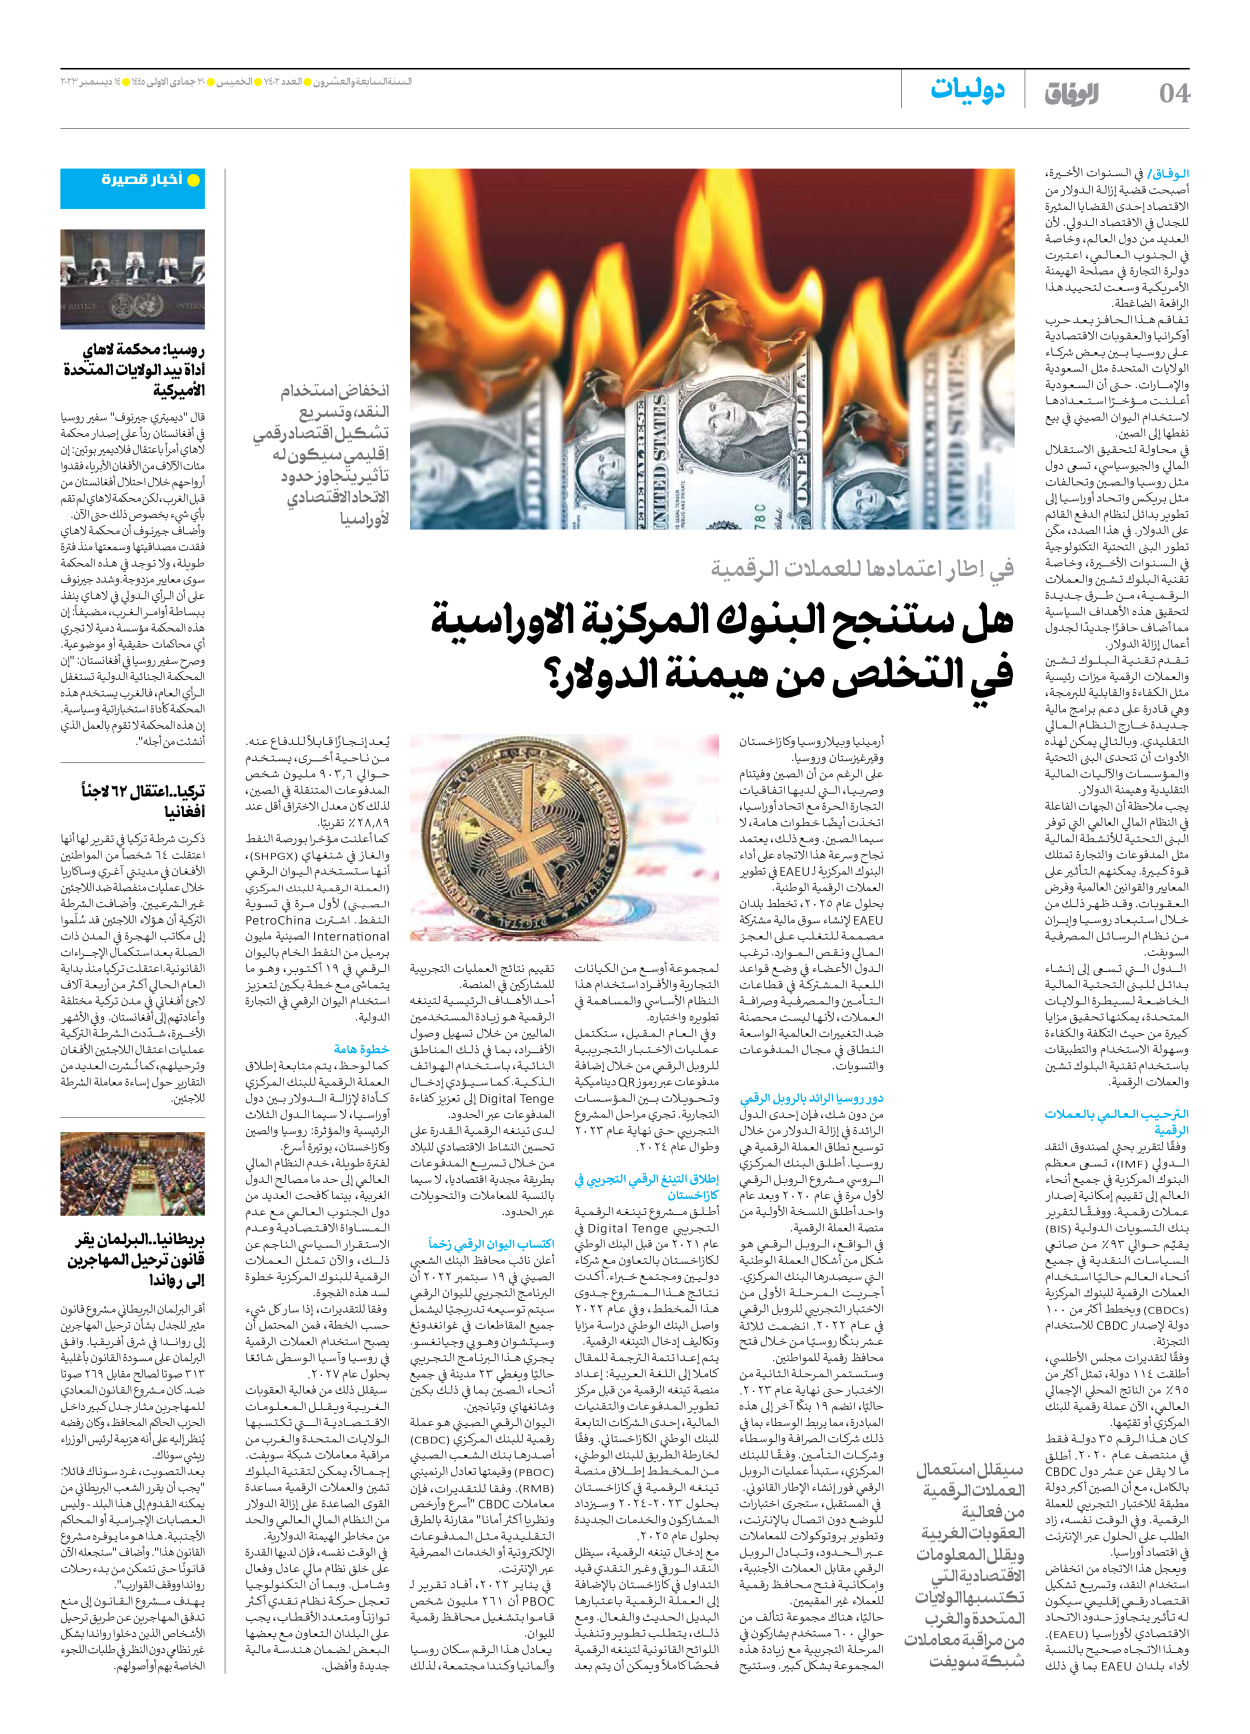 صحیفة ایران الدولیة الوفاق - العدد سبعة آلاف وأربعمائة واثنان - ١٤ ديسمبر ٢٠٢٣ - الصفحة ٤